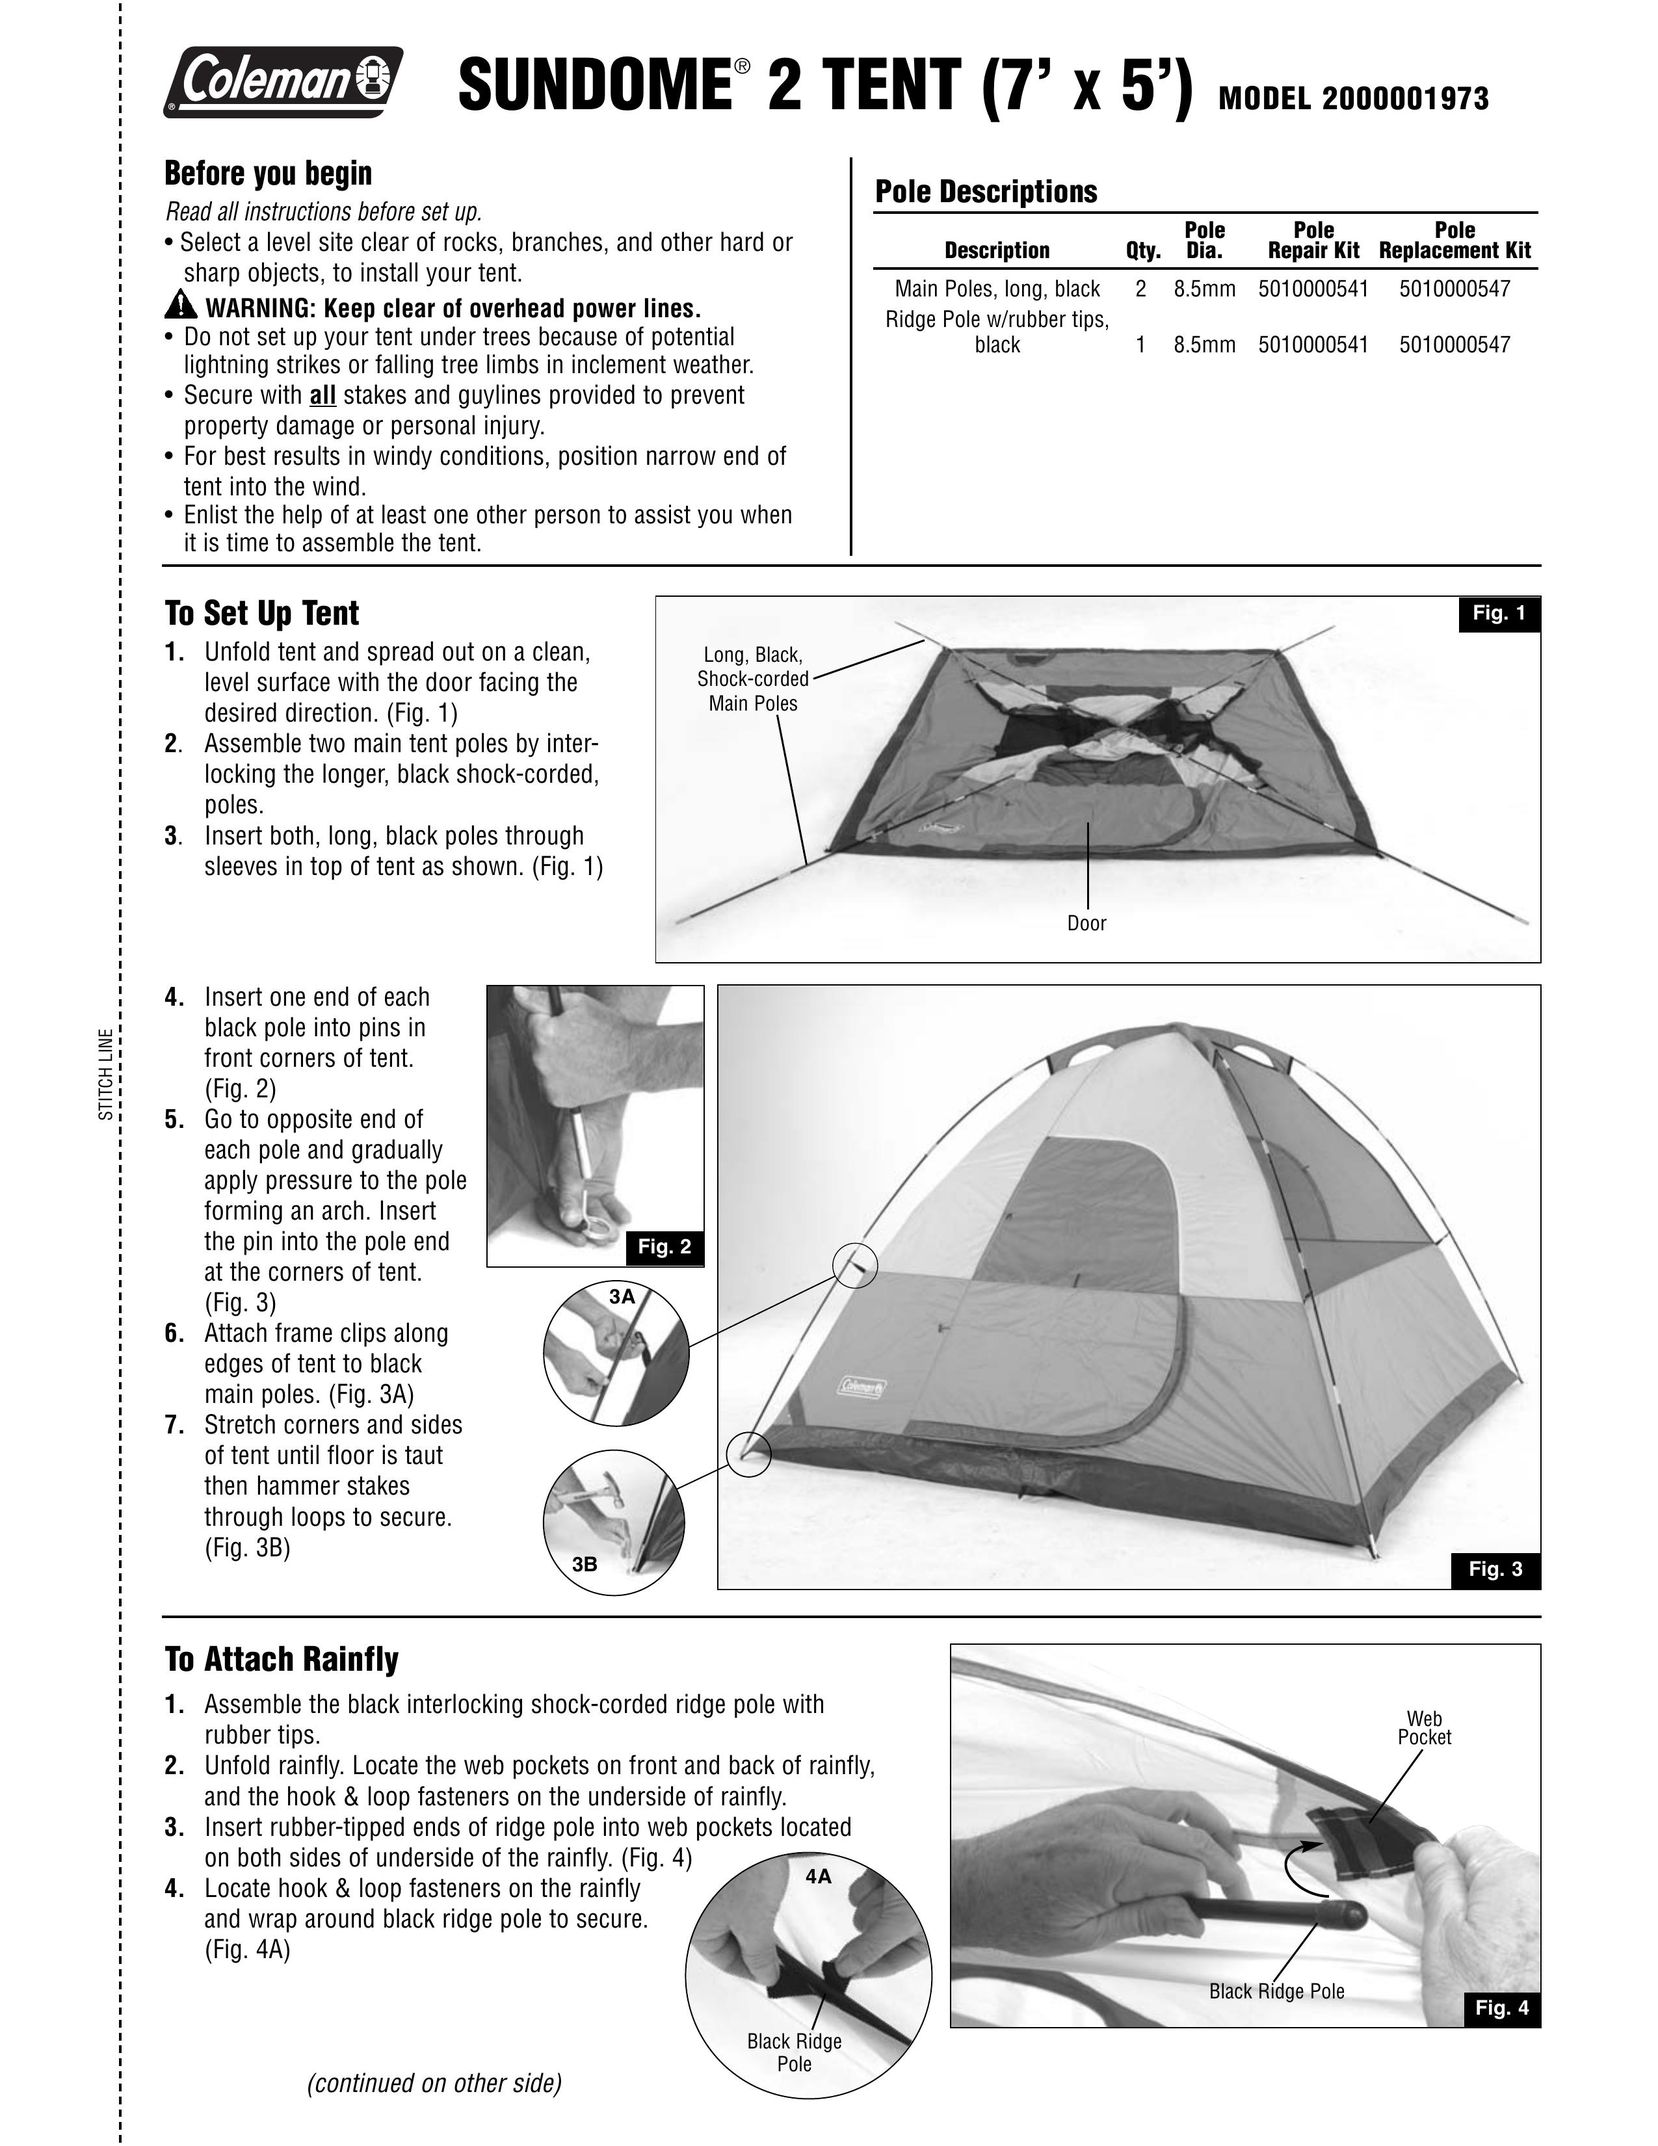 Coleman 2000001973 Tent User Manual